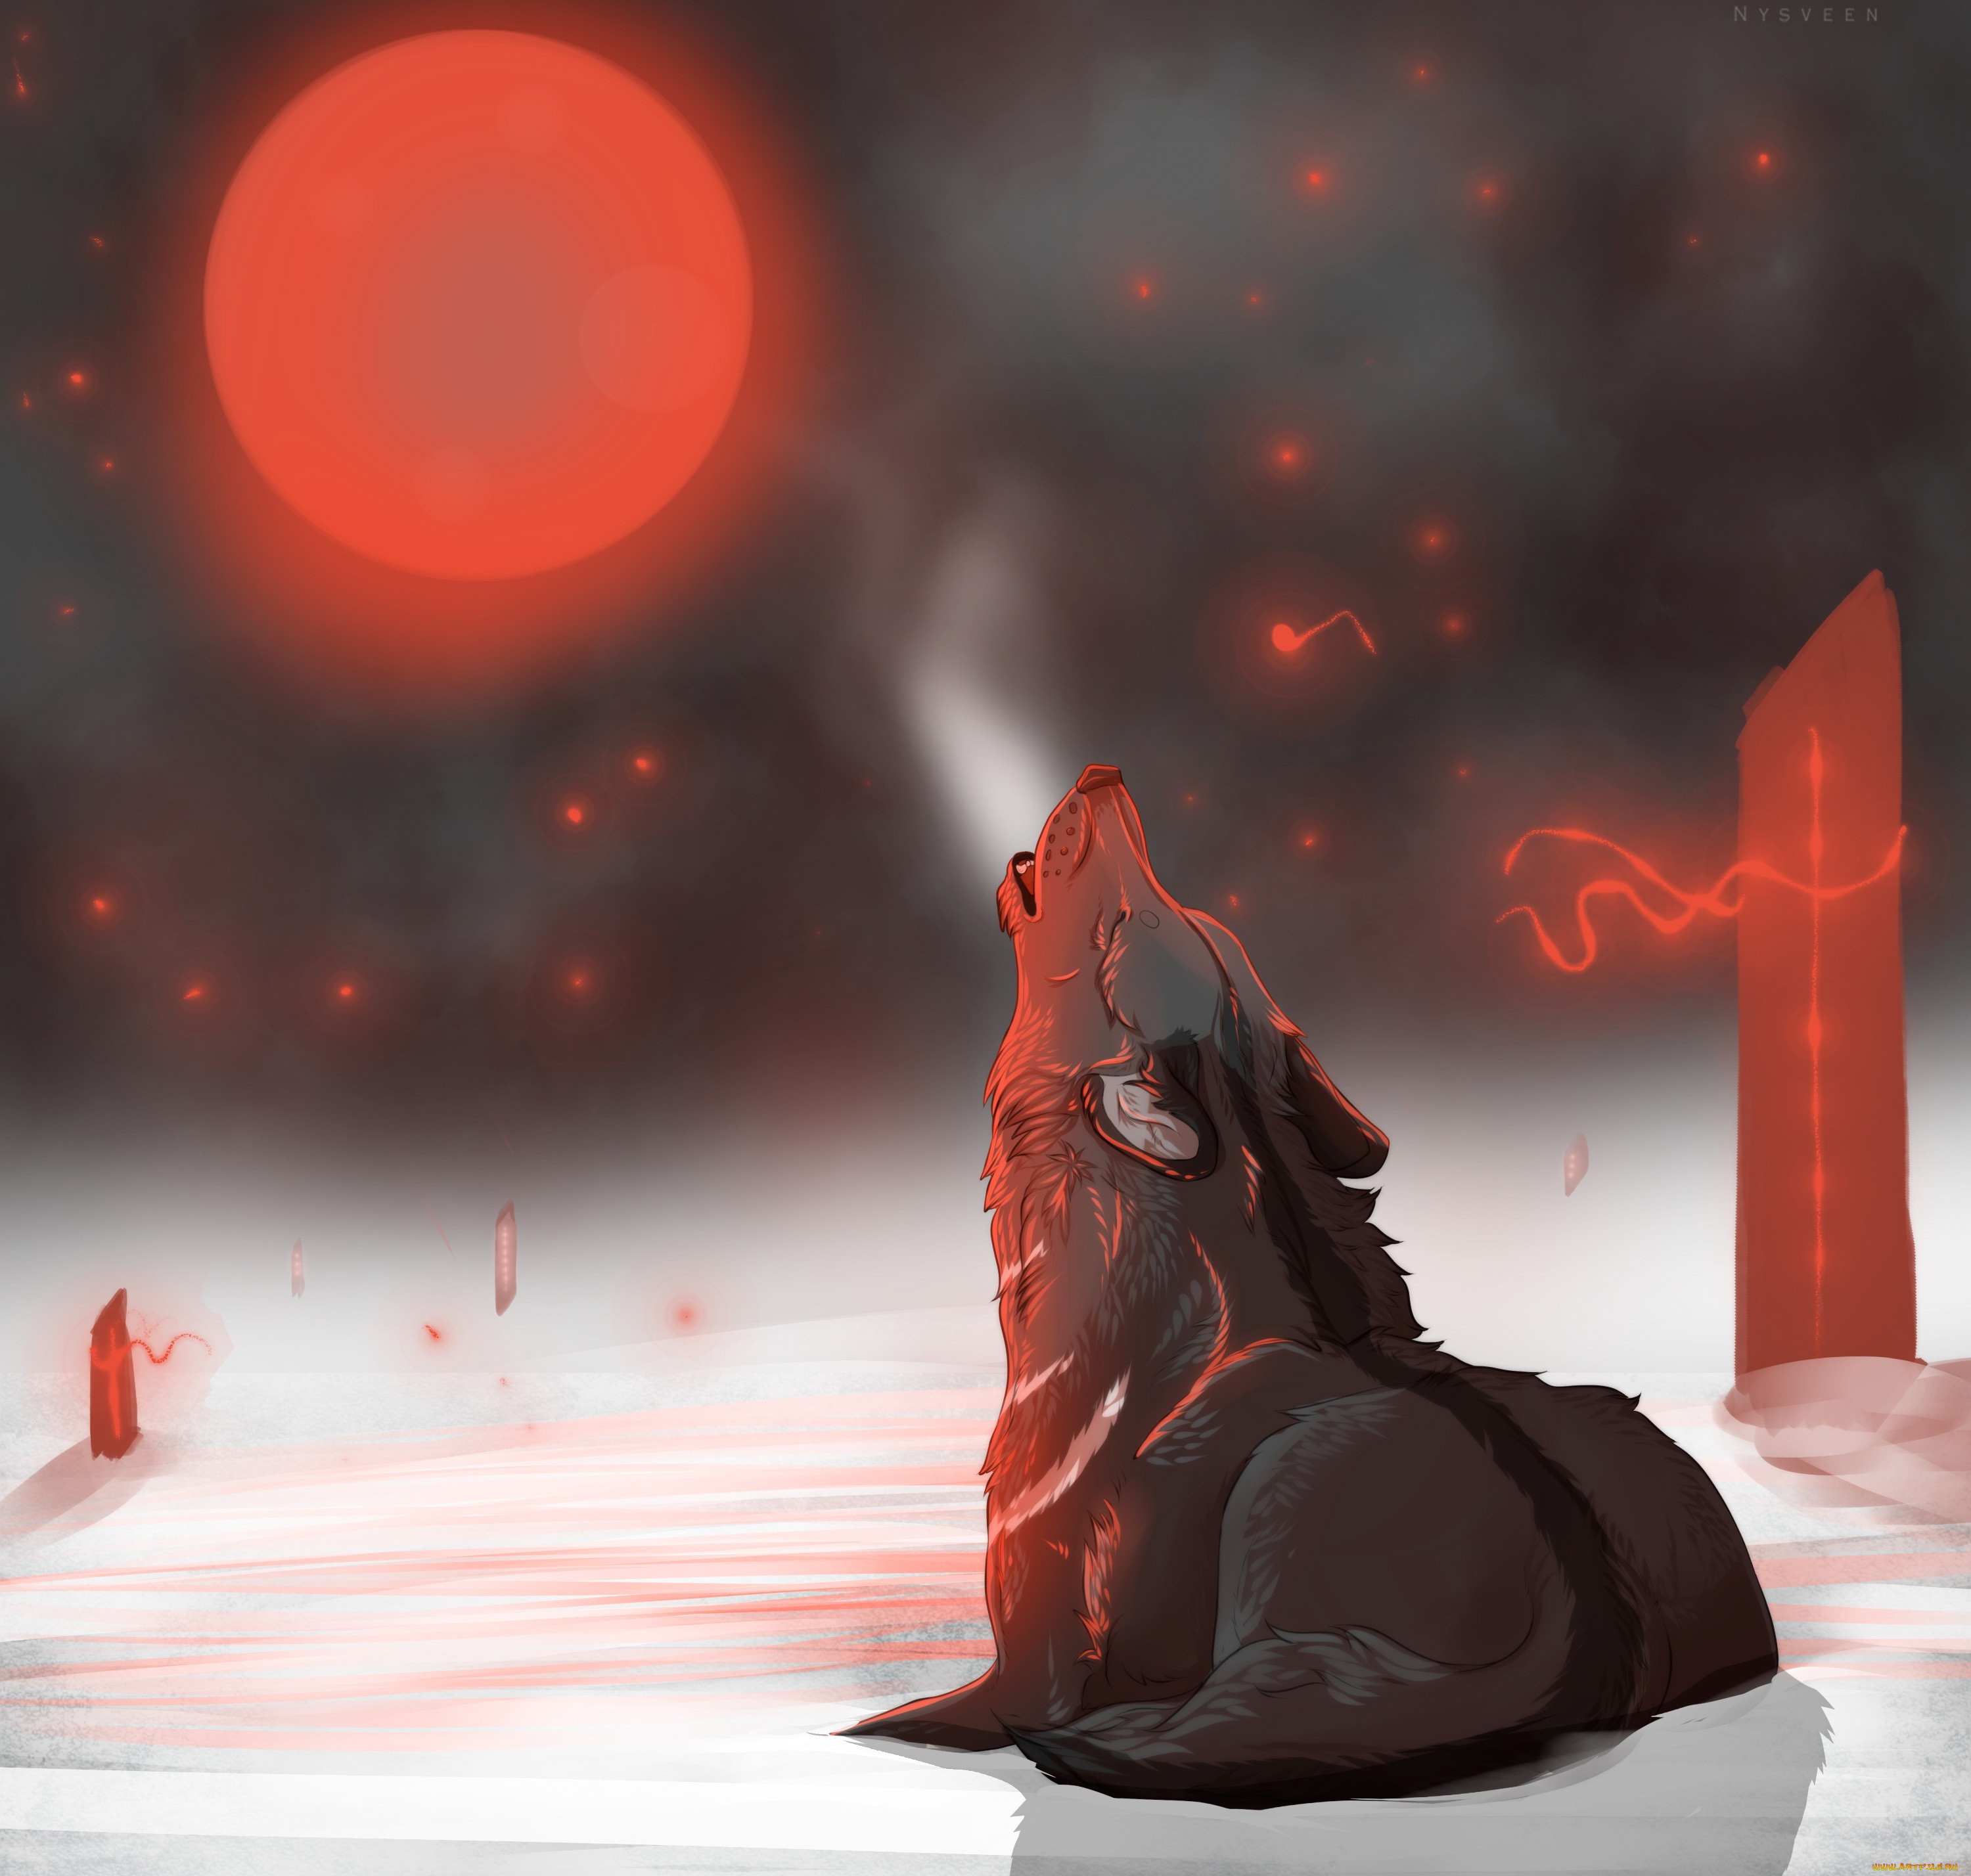 Волк и красная Луна